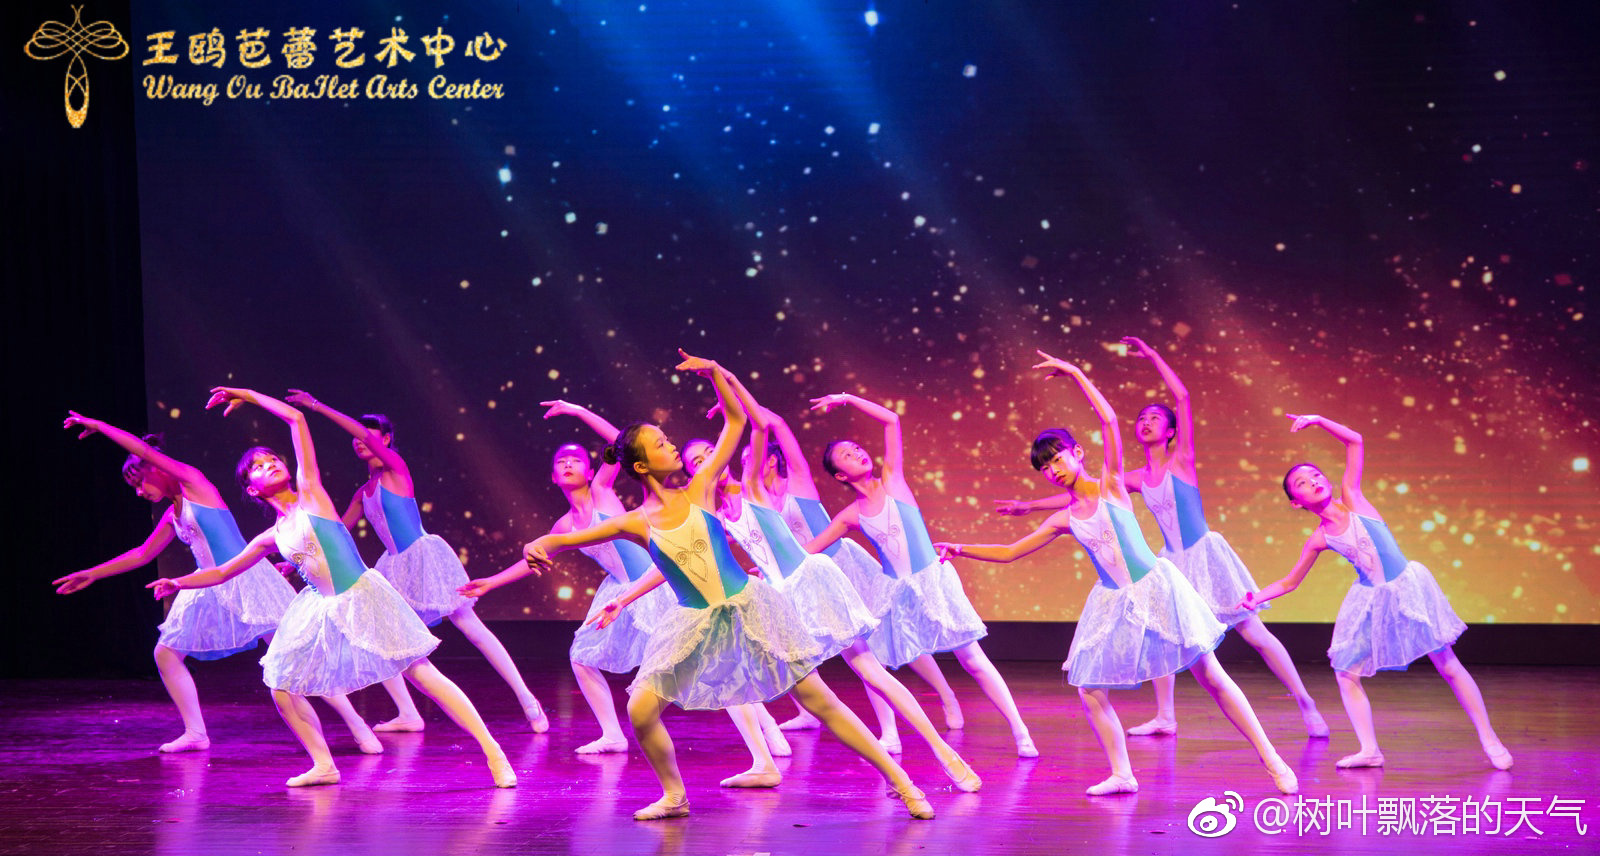 2018年元旦,桂林王鸥芭蕾艺术中心的学员们